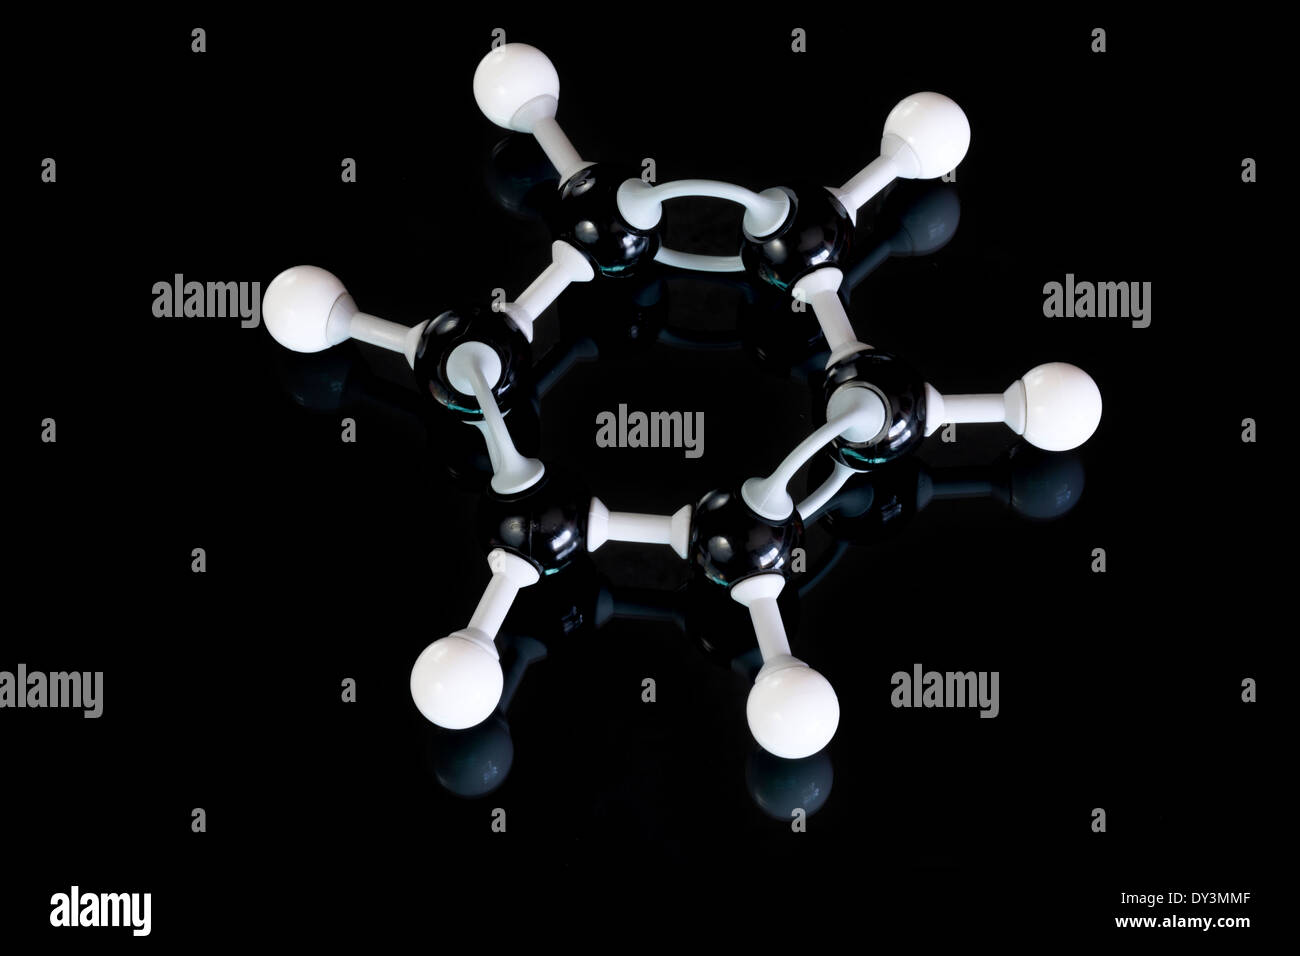 Modelo de molécula de benceno con bolas y varillas Foto de stock